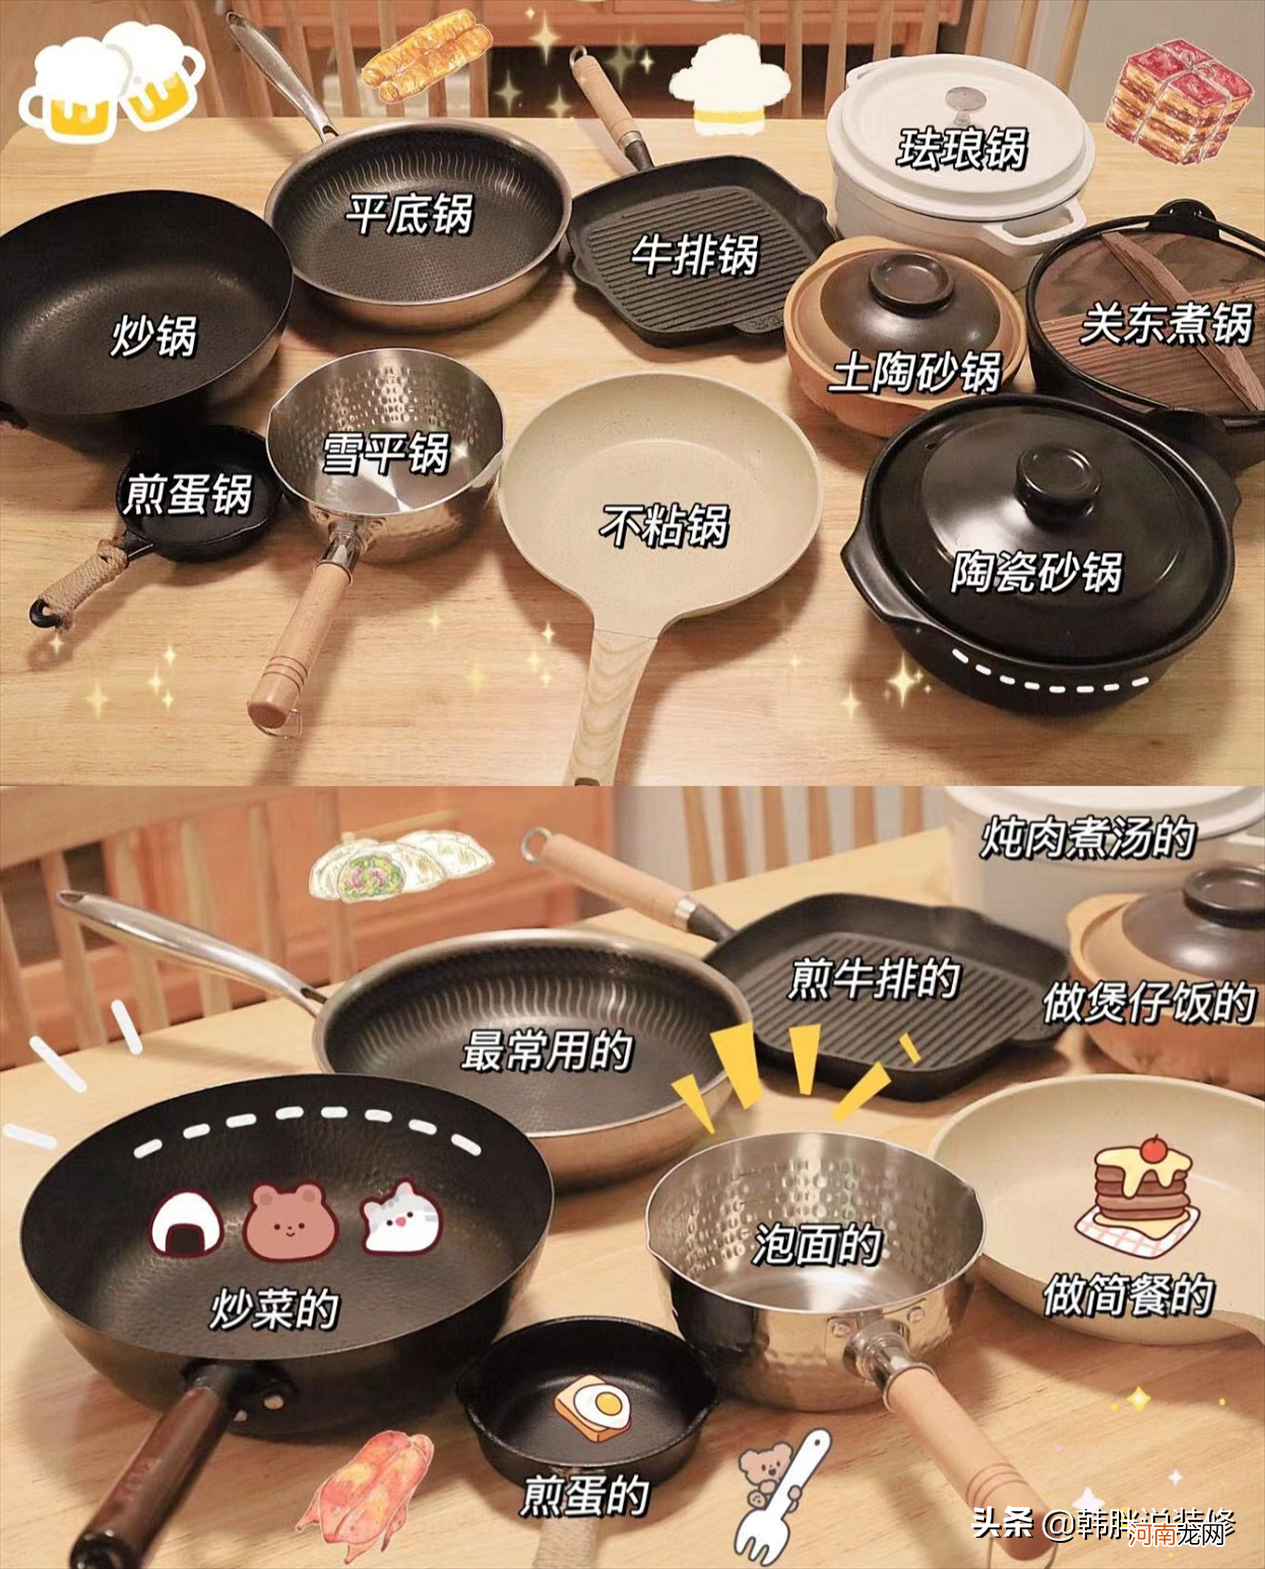 有这五种锅就够了。 锅里有什么锅？